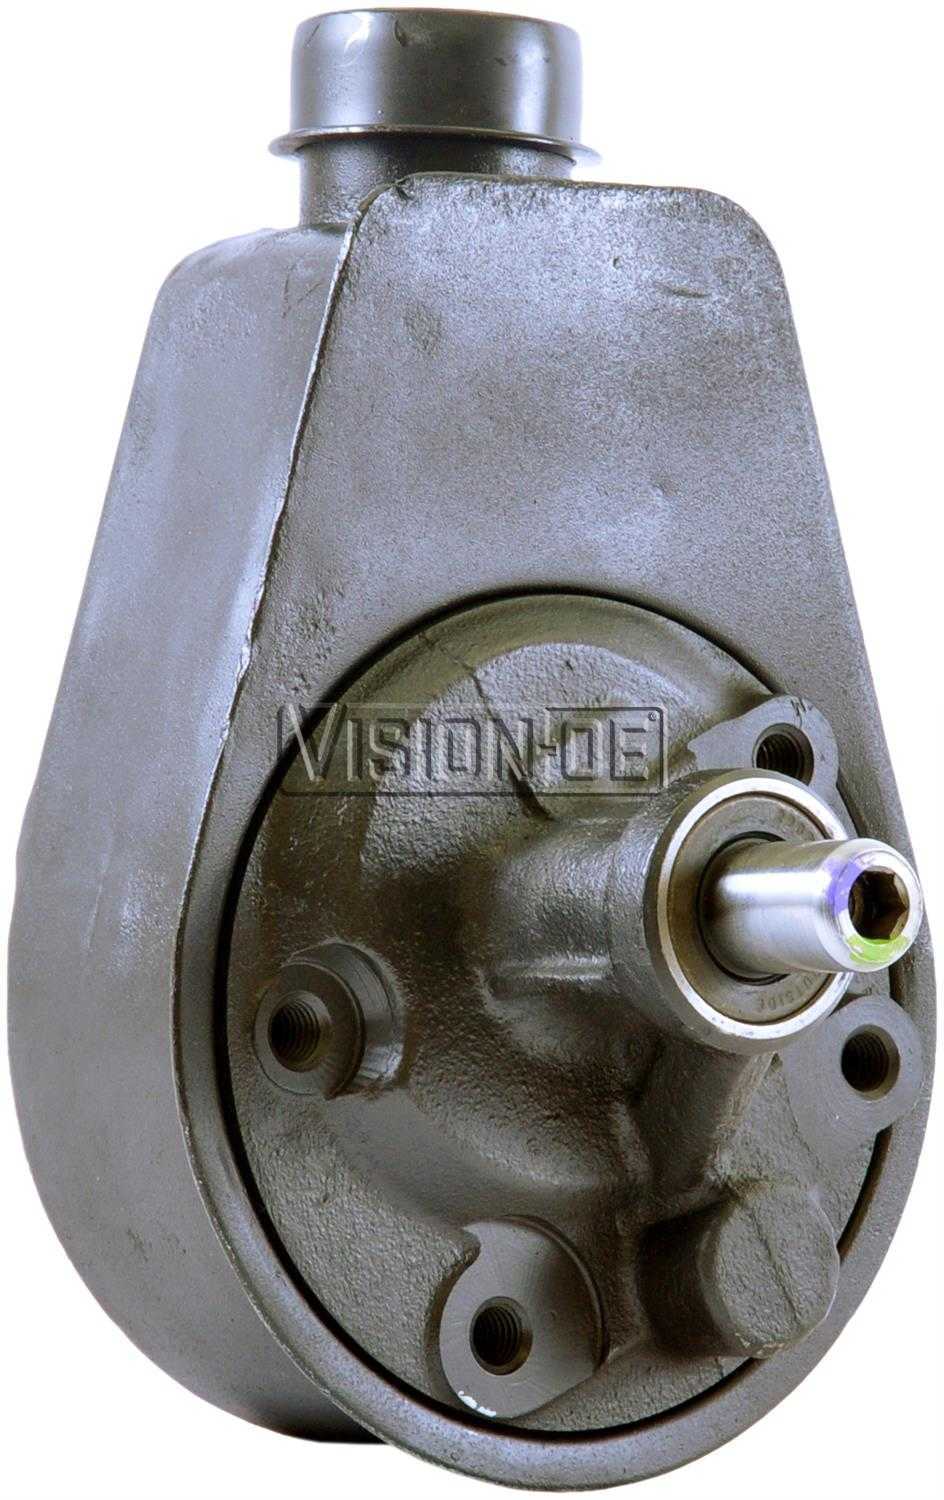 VISION-OE - Reman Power Steering Pump - VOE 731-2144